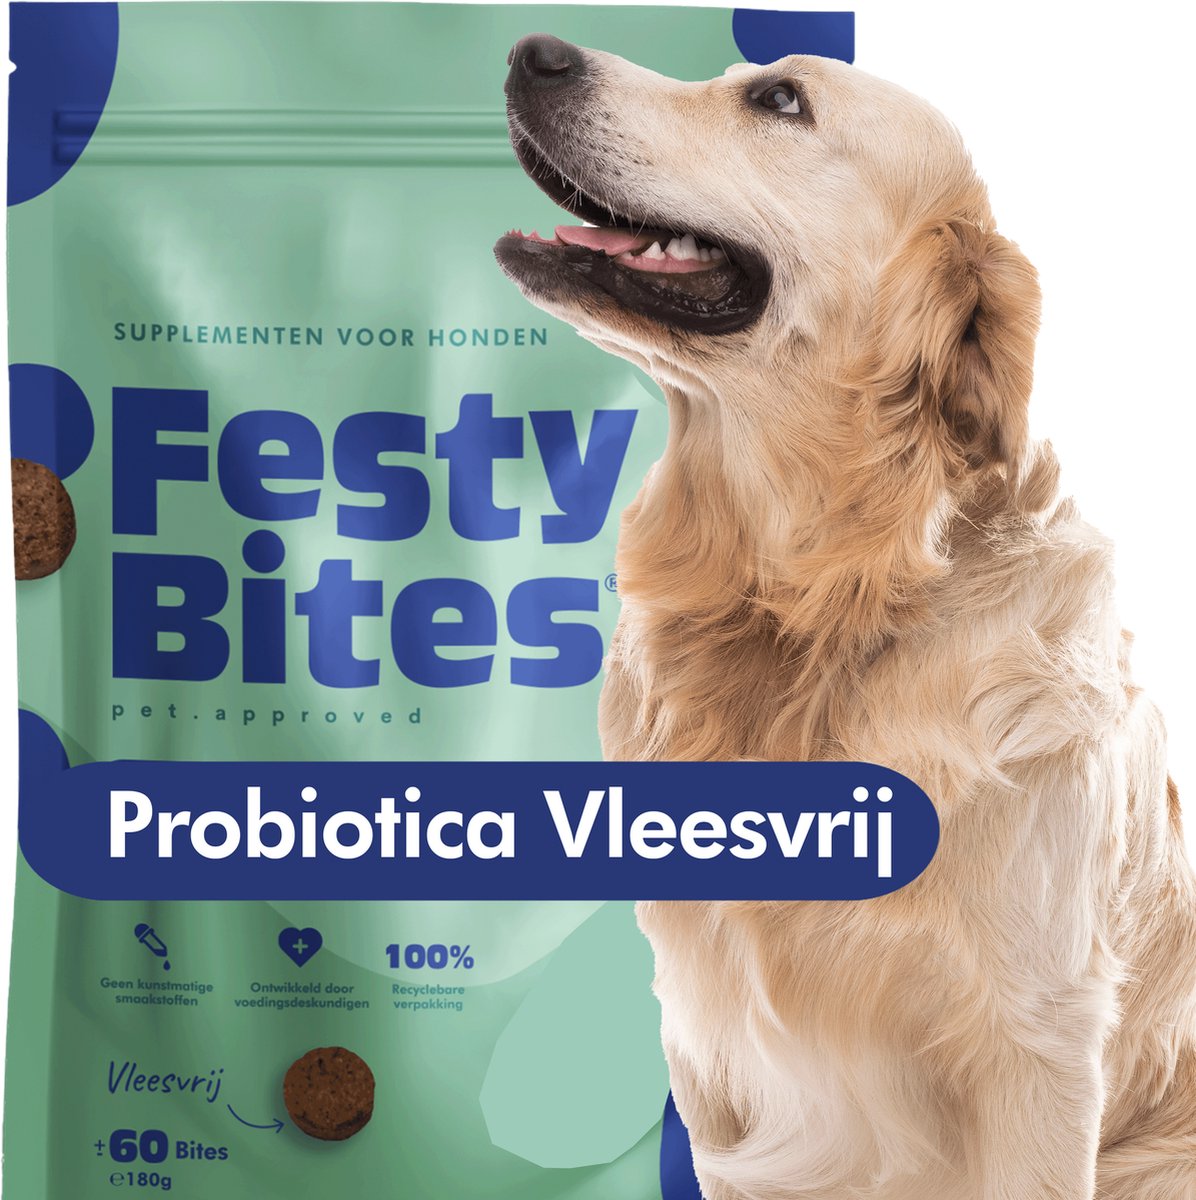 Probiotica Hond - Vleesvrij - Bij Jeuk, Gras eten, Diarree & Constipatie - Ondersteunt Darmflora & Spijsvertering - Hondensnacks - FAVV goedgekeurd - 60 Hondensnoepjes - Brievenbuspakket